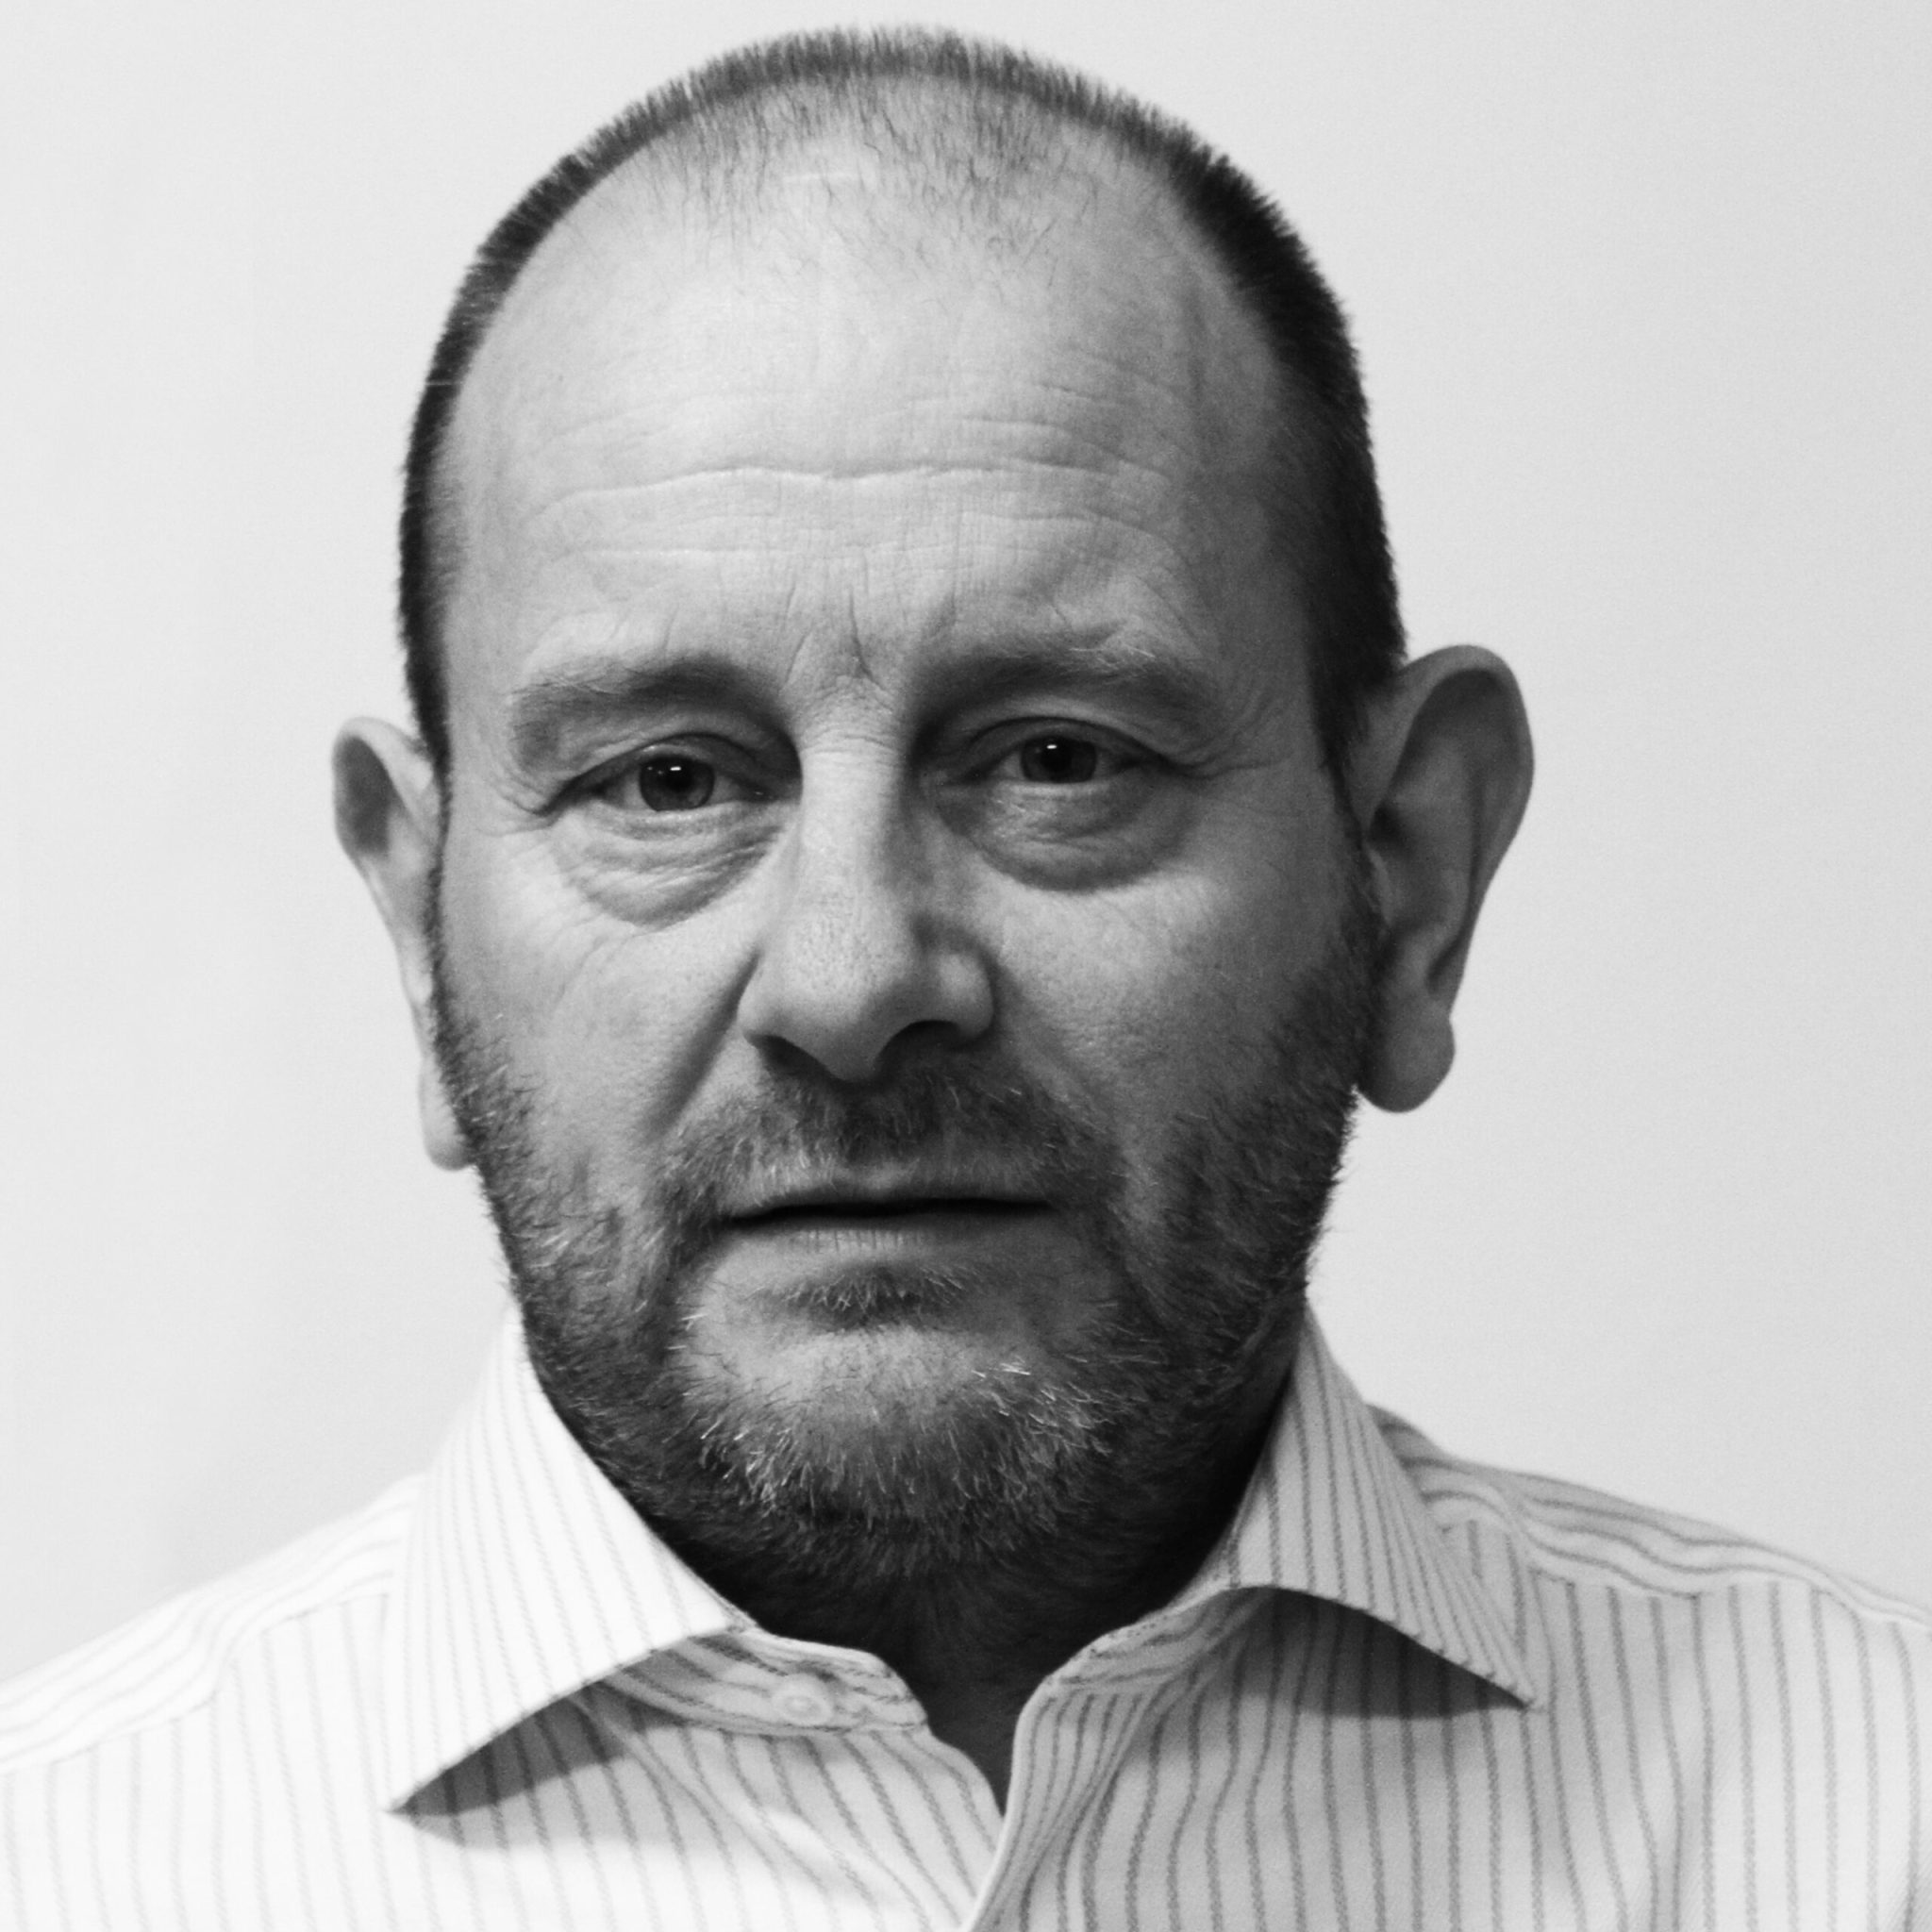 Chris May (Executive Director, Birmingham)